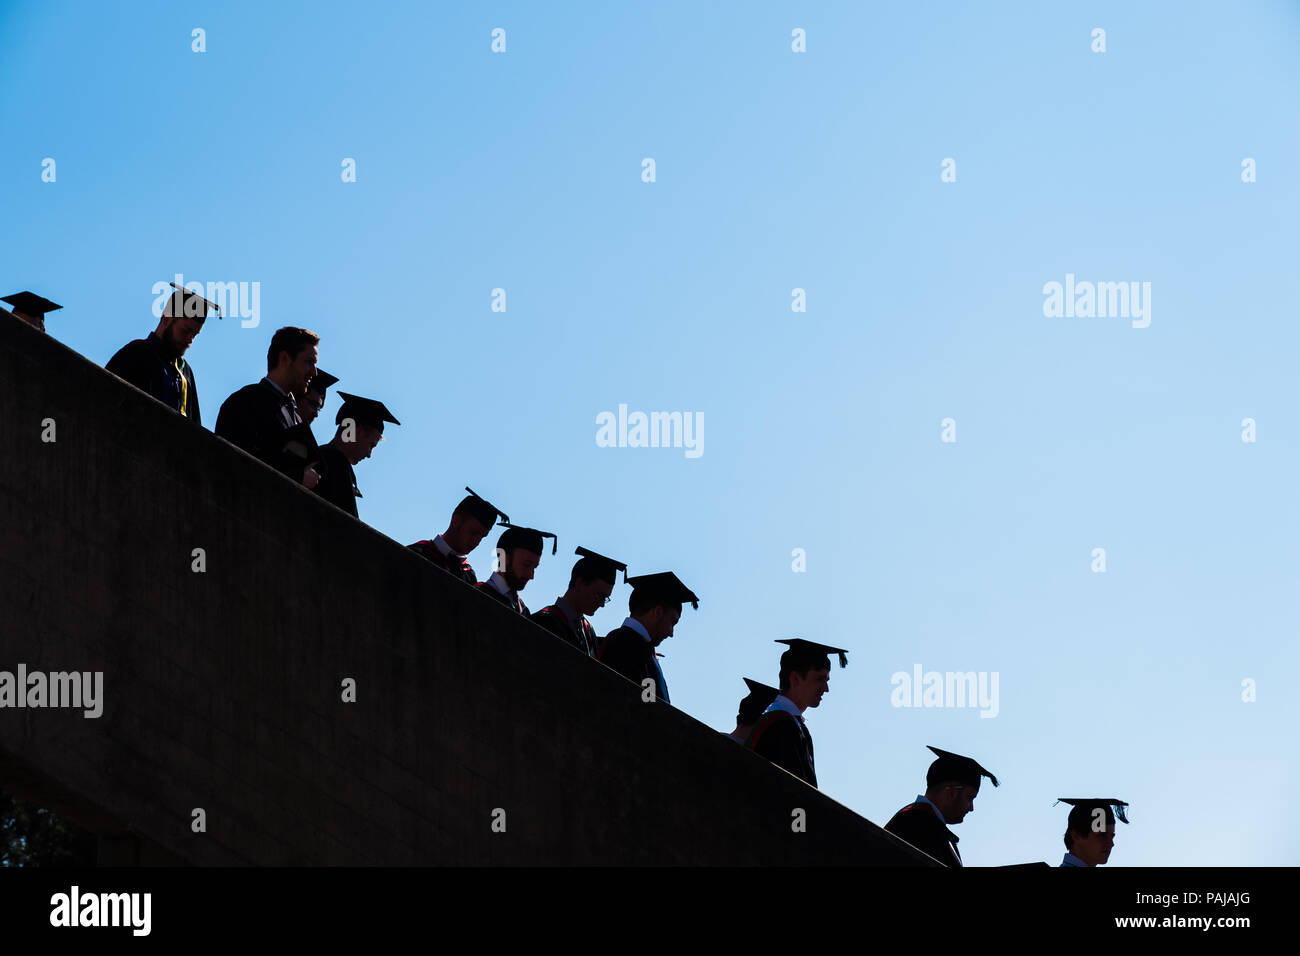 L'enseignement supérieur au Royaume-Uni : les finissants d'université d'Aberystwyth, à leurs conseils et le mortier traditionnel robes académiques noir. Silhouetted against a blue sky. Juillet 2018 Banque D'Images